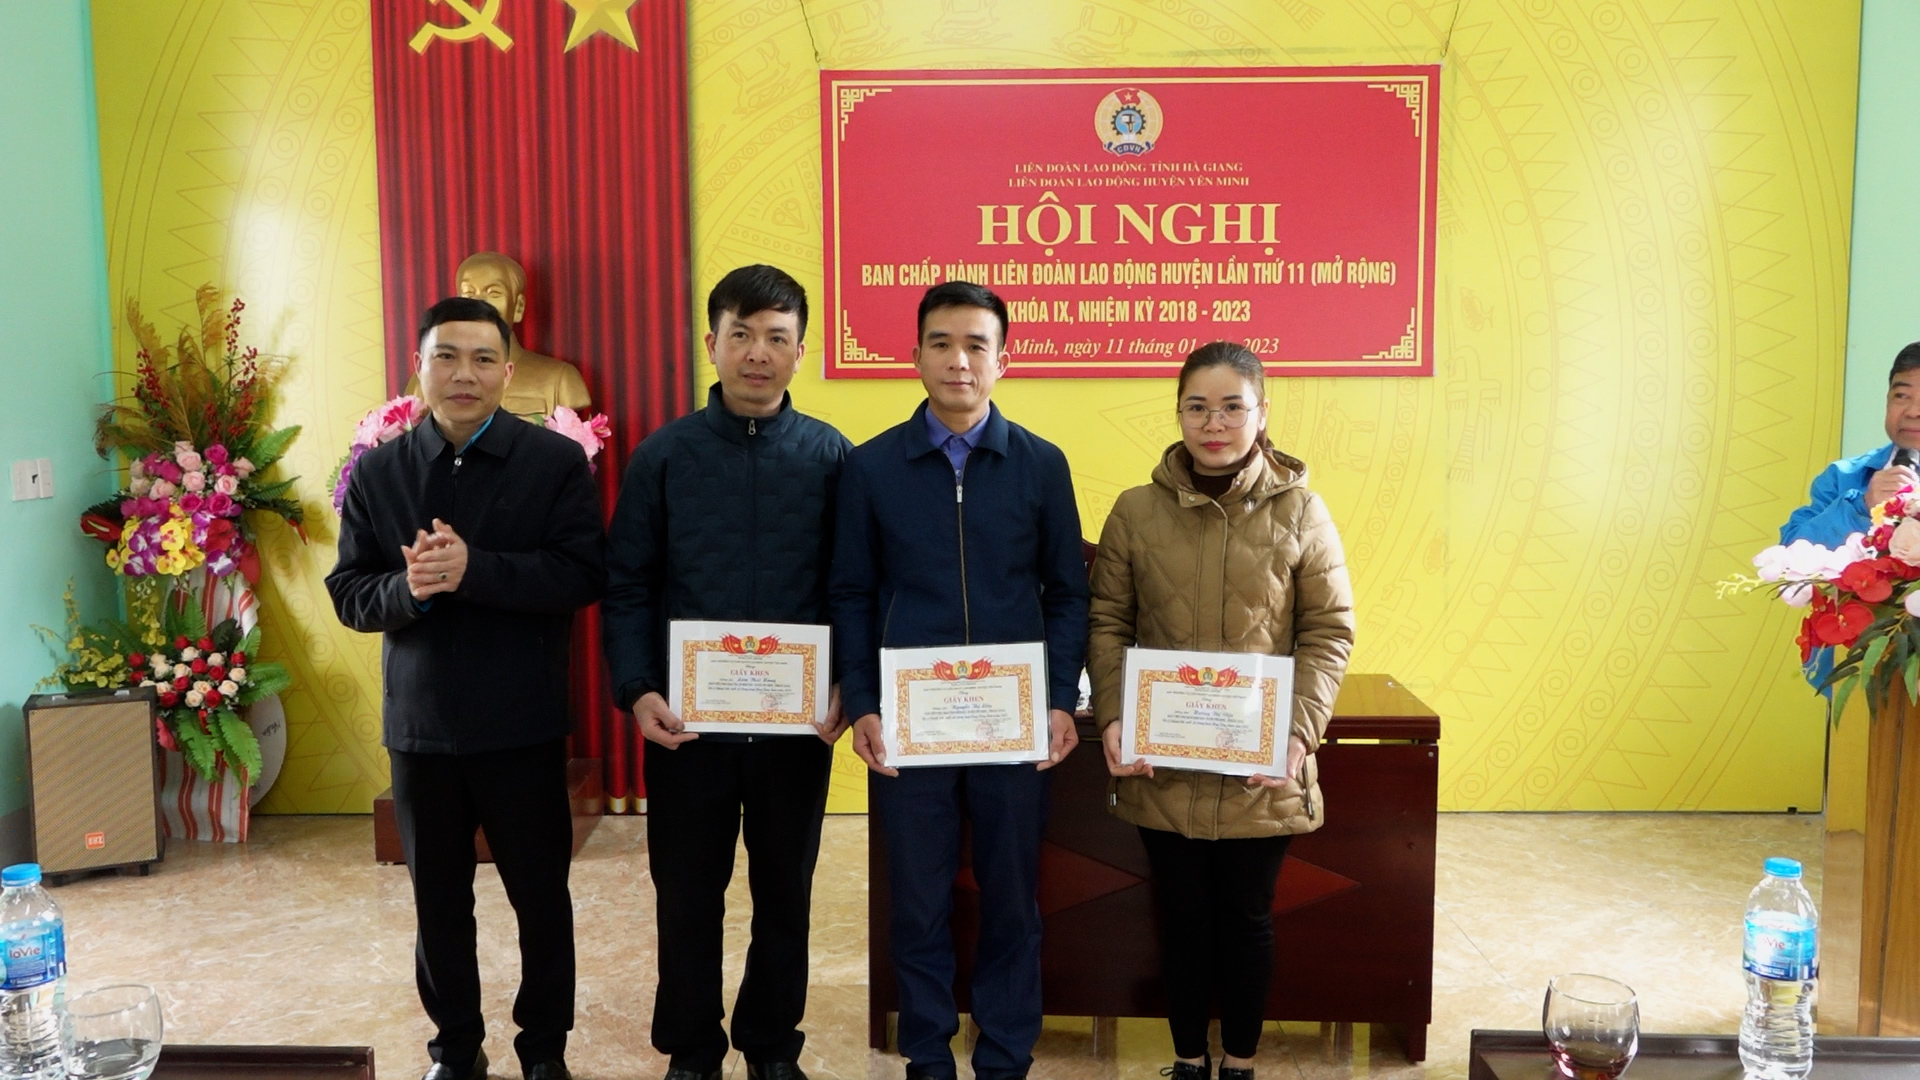 Liên đoàn lao động huyện Yên Minh tổng kết công tác năm 2022